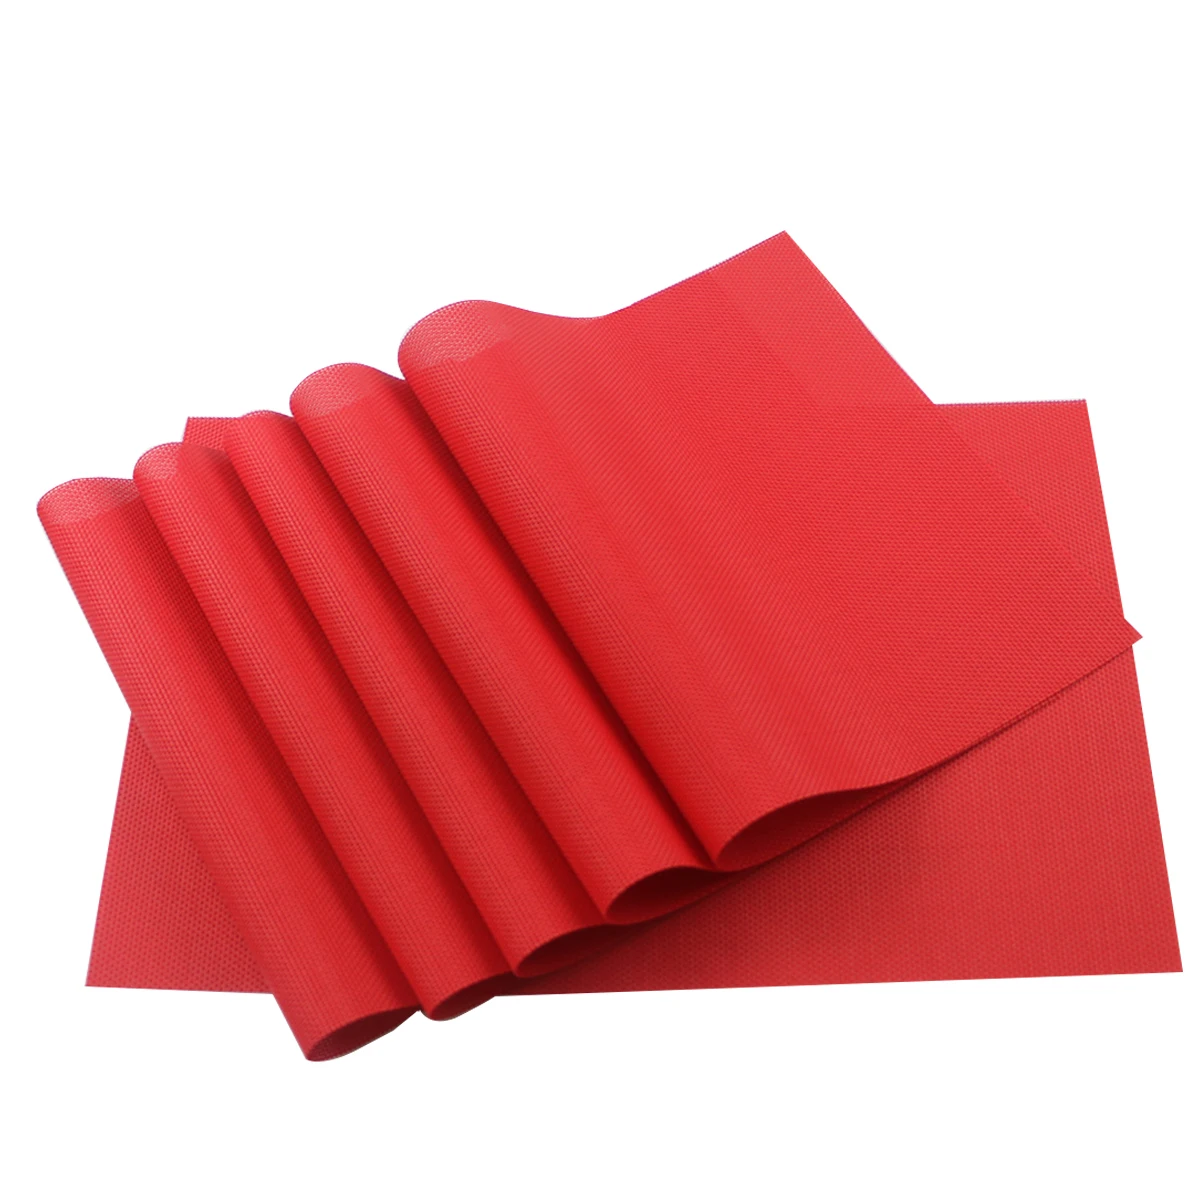 JANKNG 6 шт. термостойкий и водонепроницаемый ПВХ коврик для столовых приборов Красочные нескользящие коврики для обеденного стола кухонные принадлежности - Цвет: Solid red